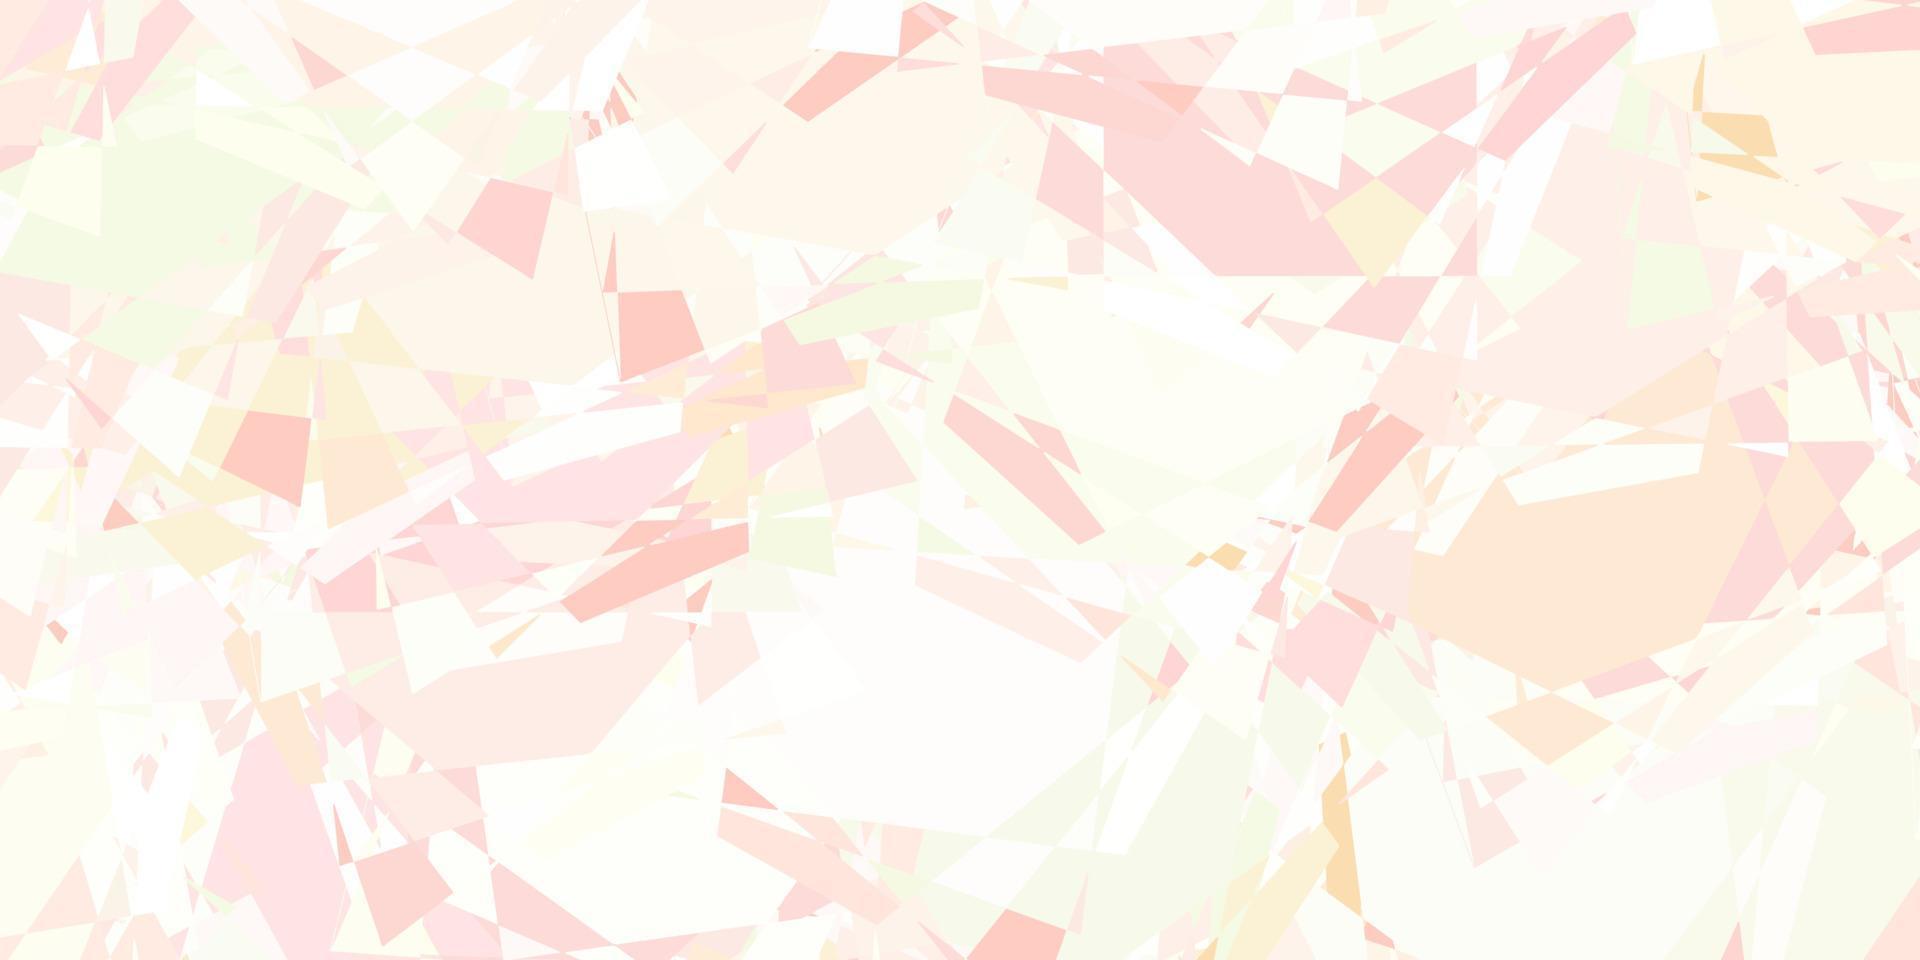 textura de vector rosa claro, verde con triángulos al azar.